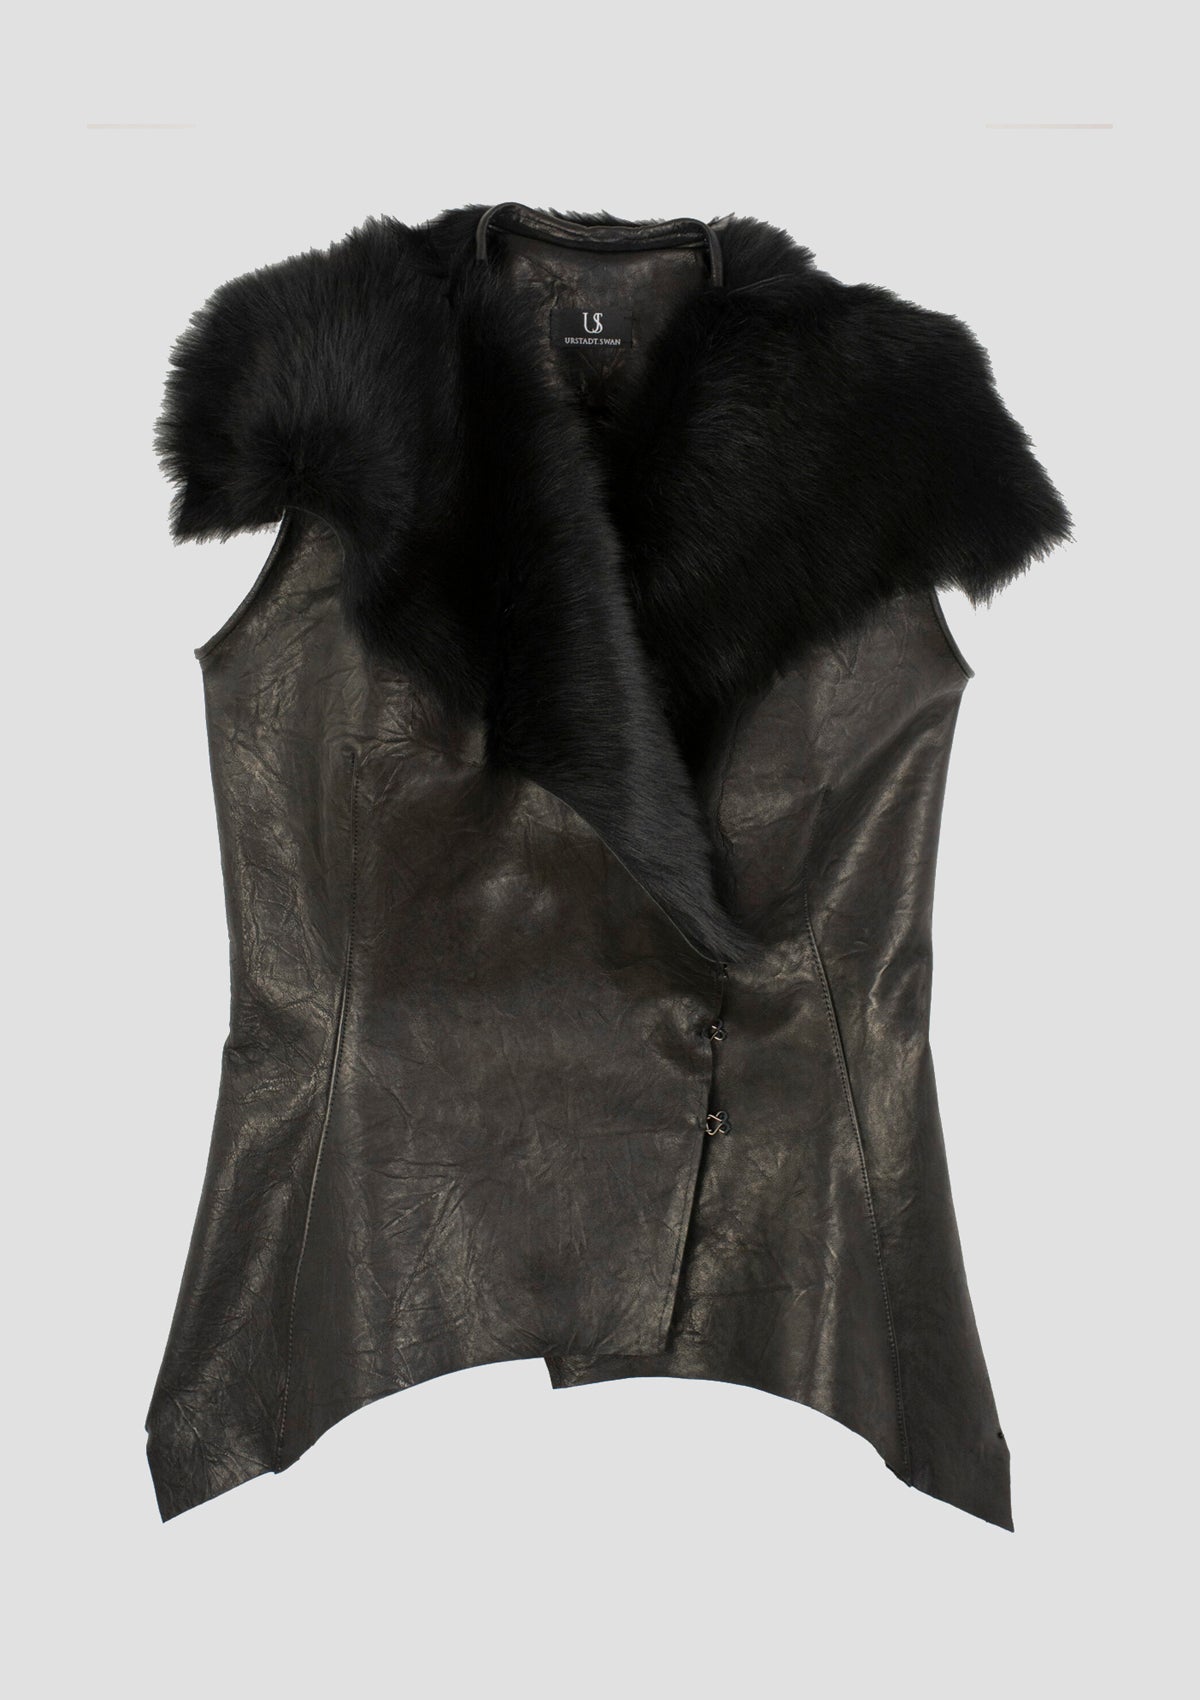 Louvre Fur faux Leather Vest women